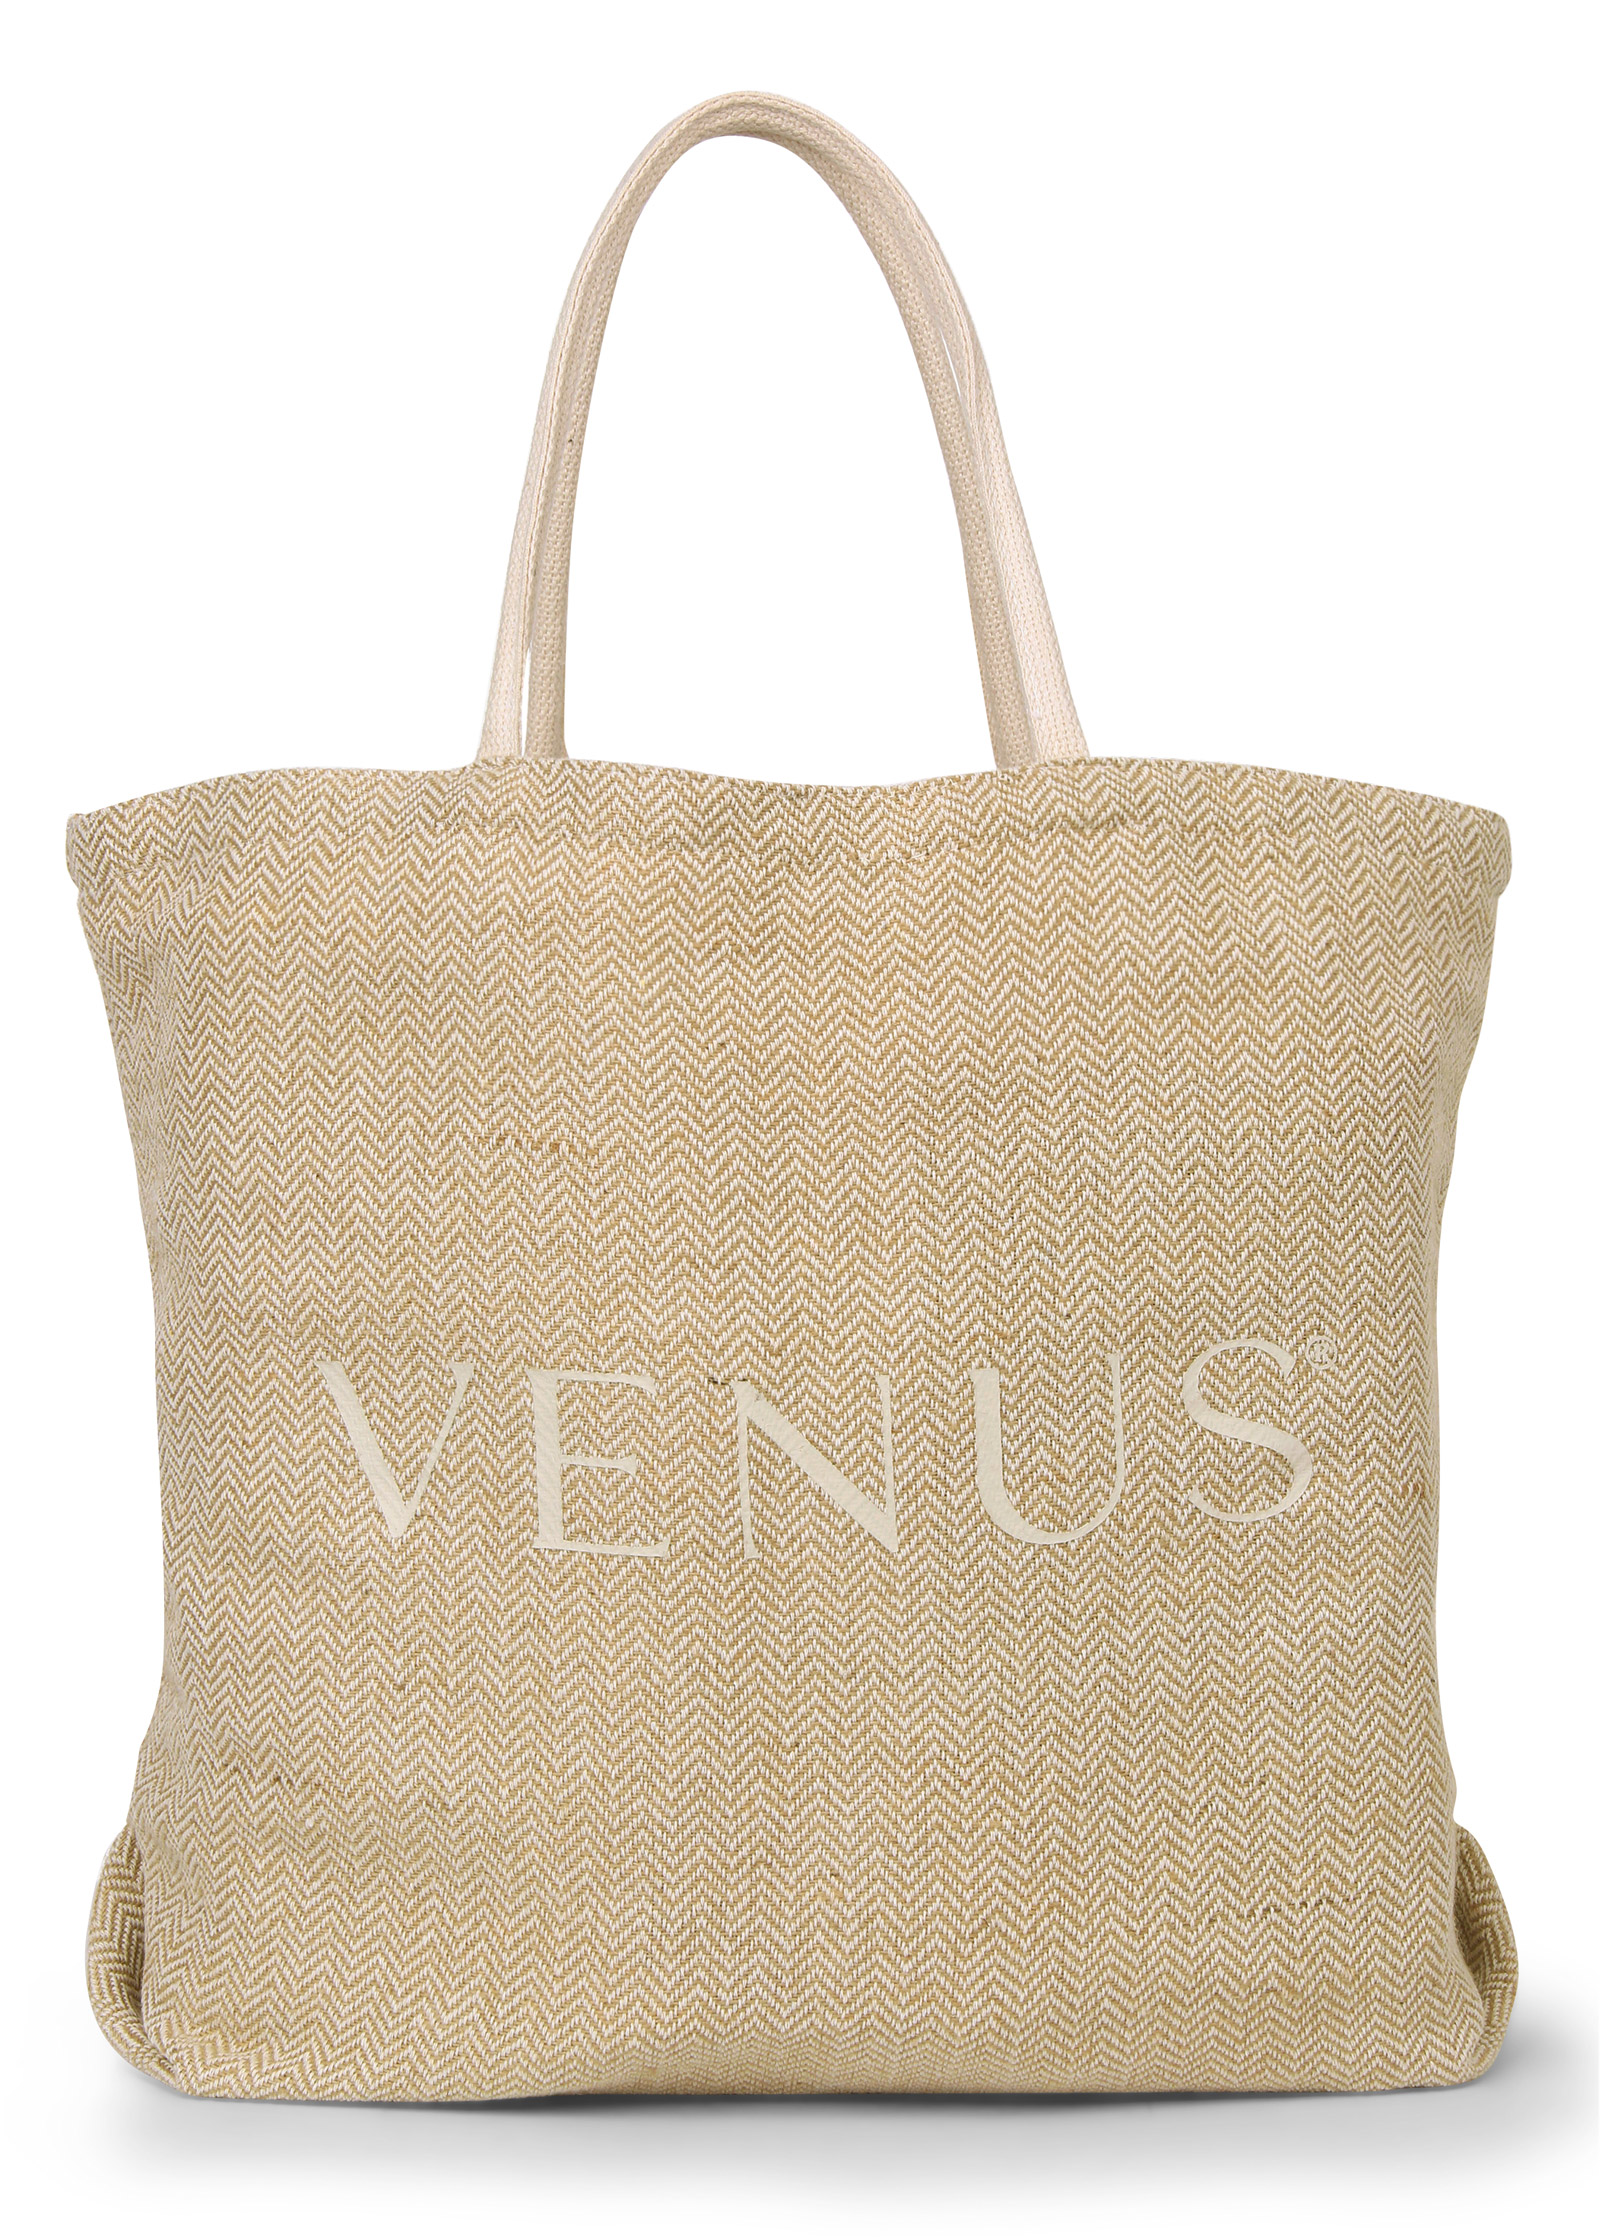 VENUS TOTE BAG in Natural Multi | VENUS